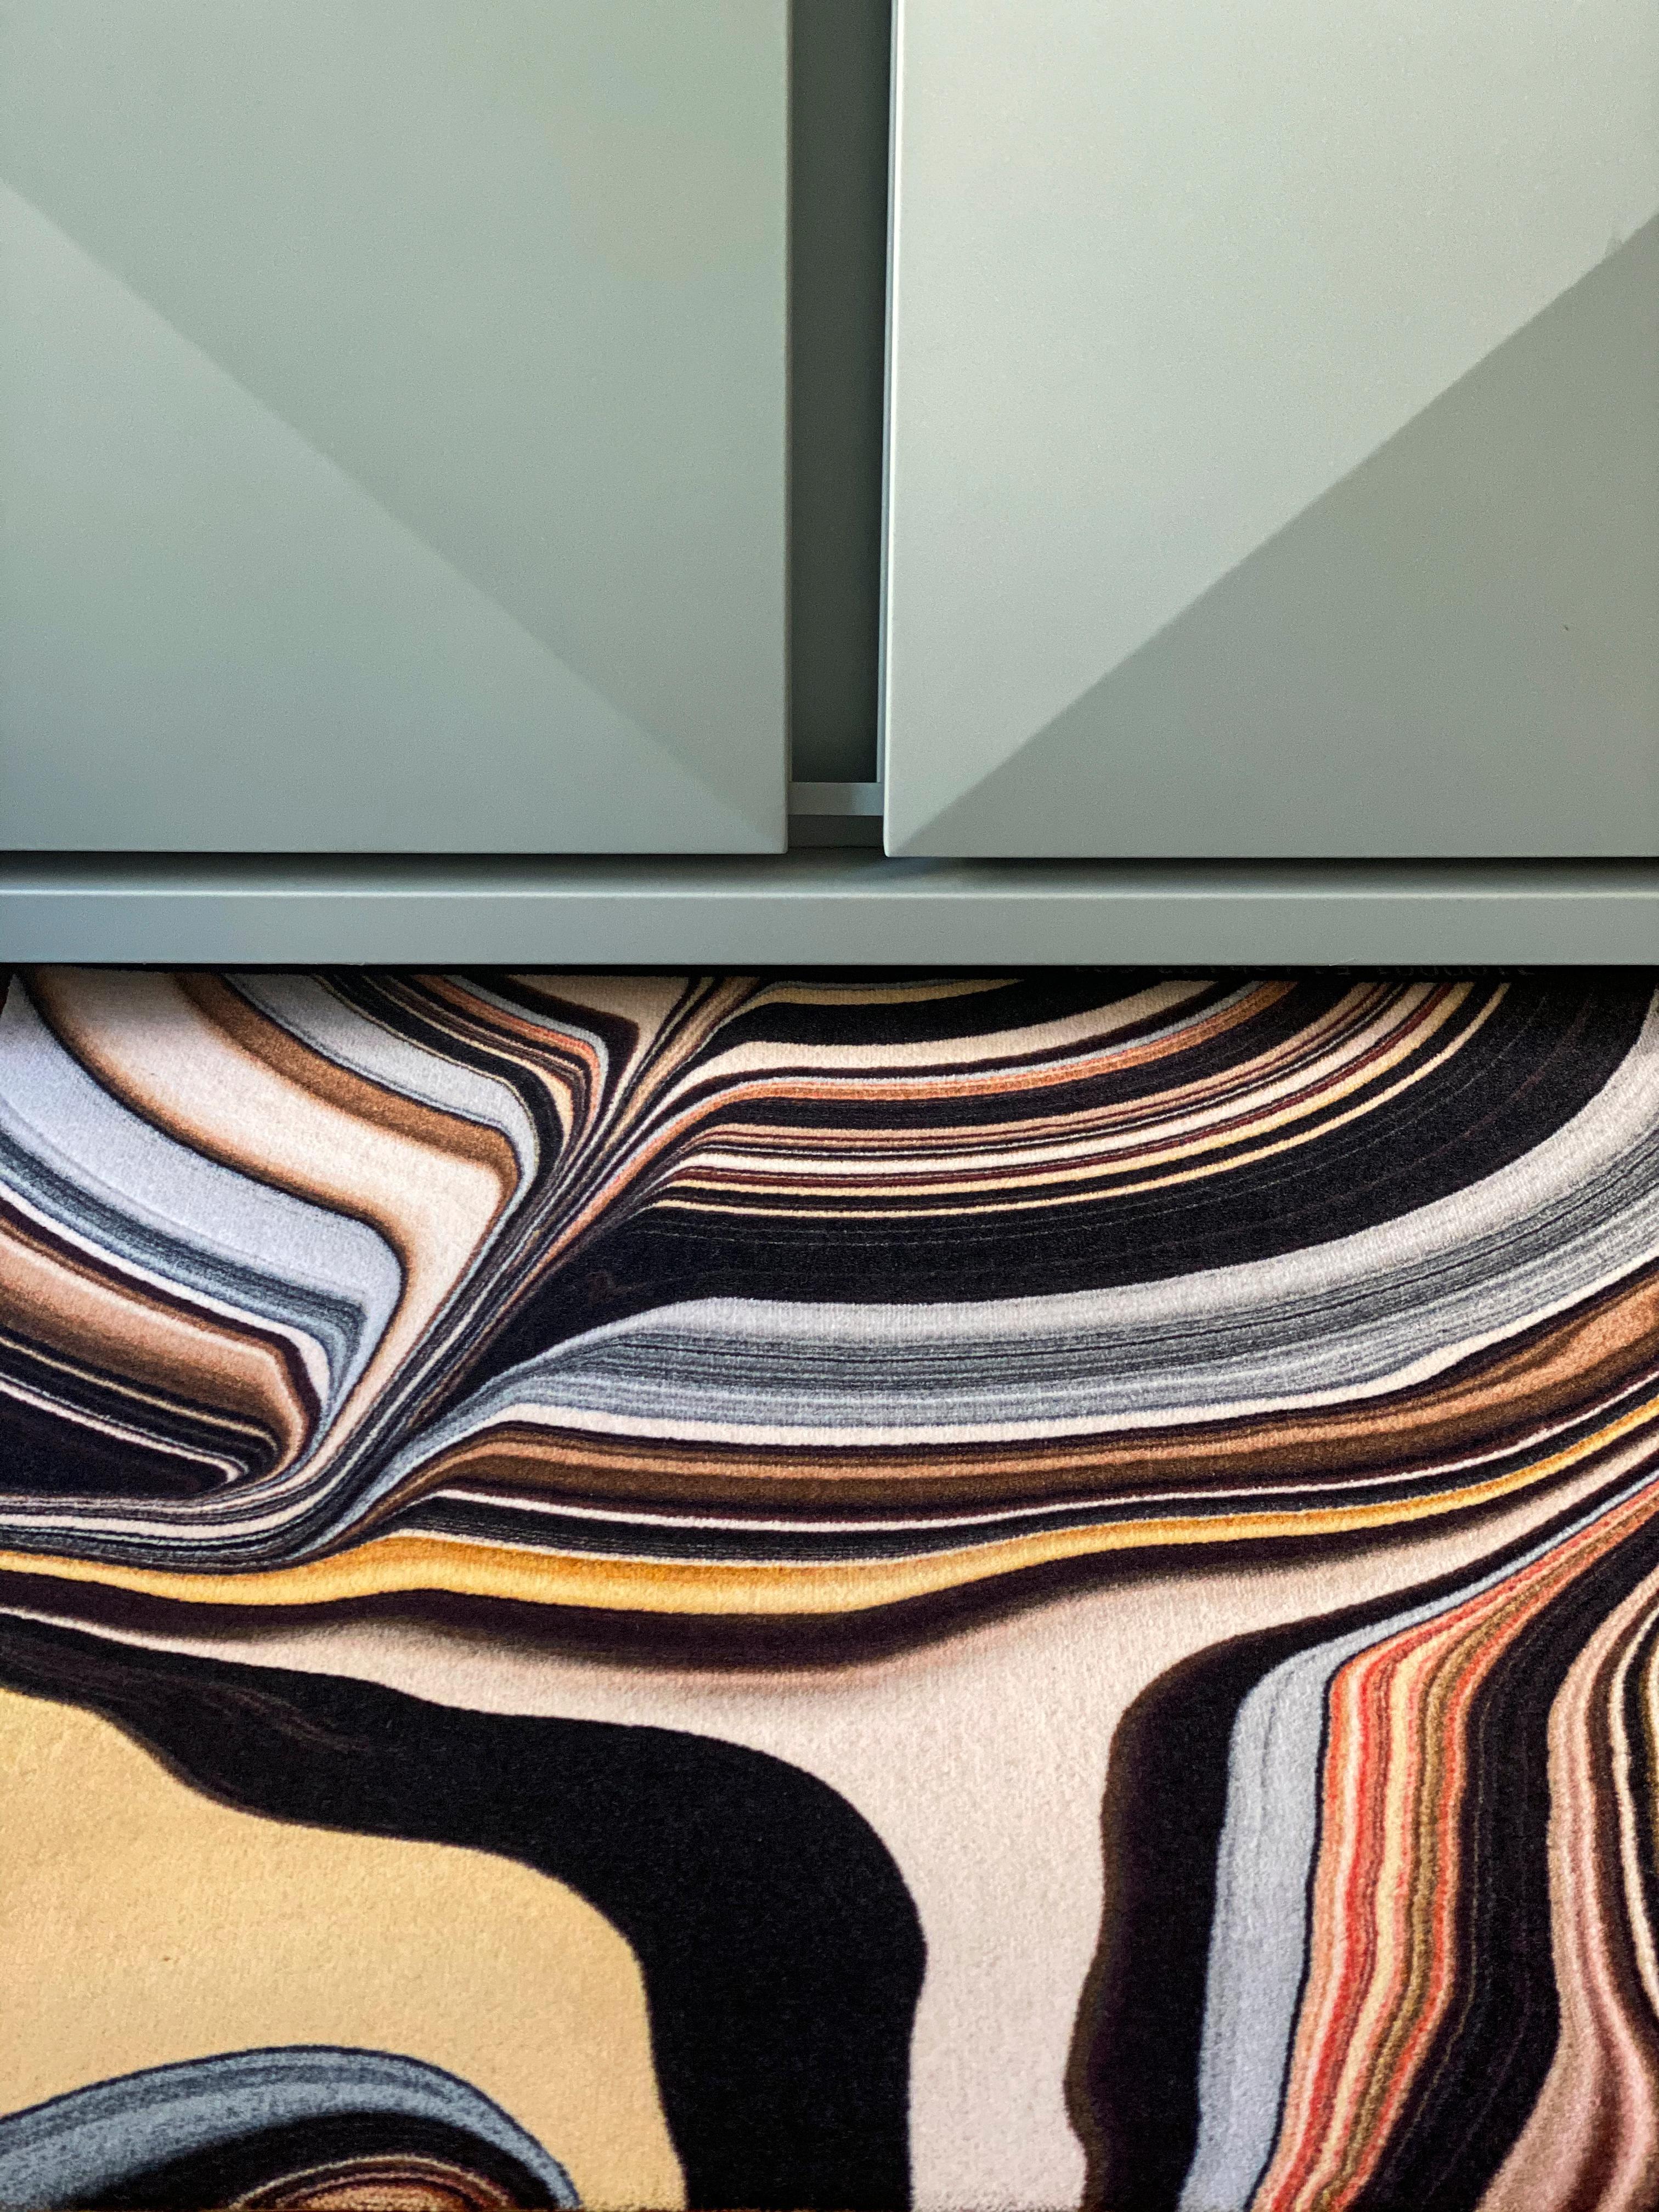 Moooi großer Liquid Layers Ara Bio-Teppich aus niedrigflorigem Polyamid von Claire Vos

Claire Vos begann 1984 ihr Studium des Industriedesigns an der 